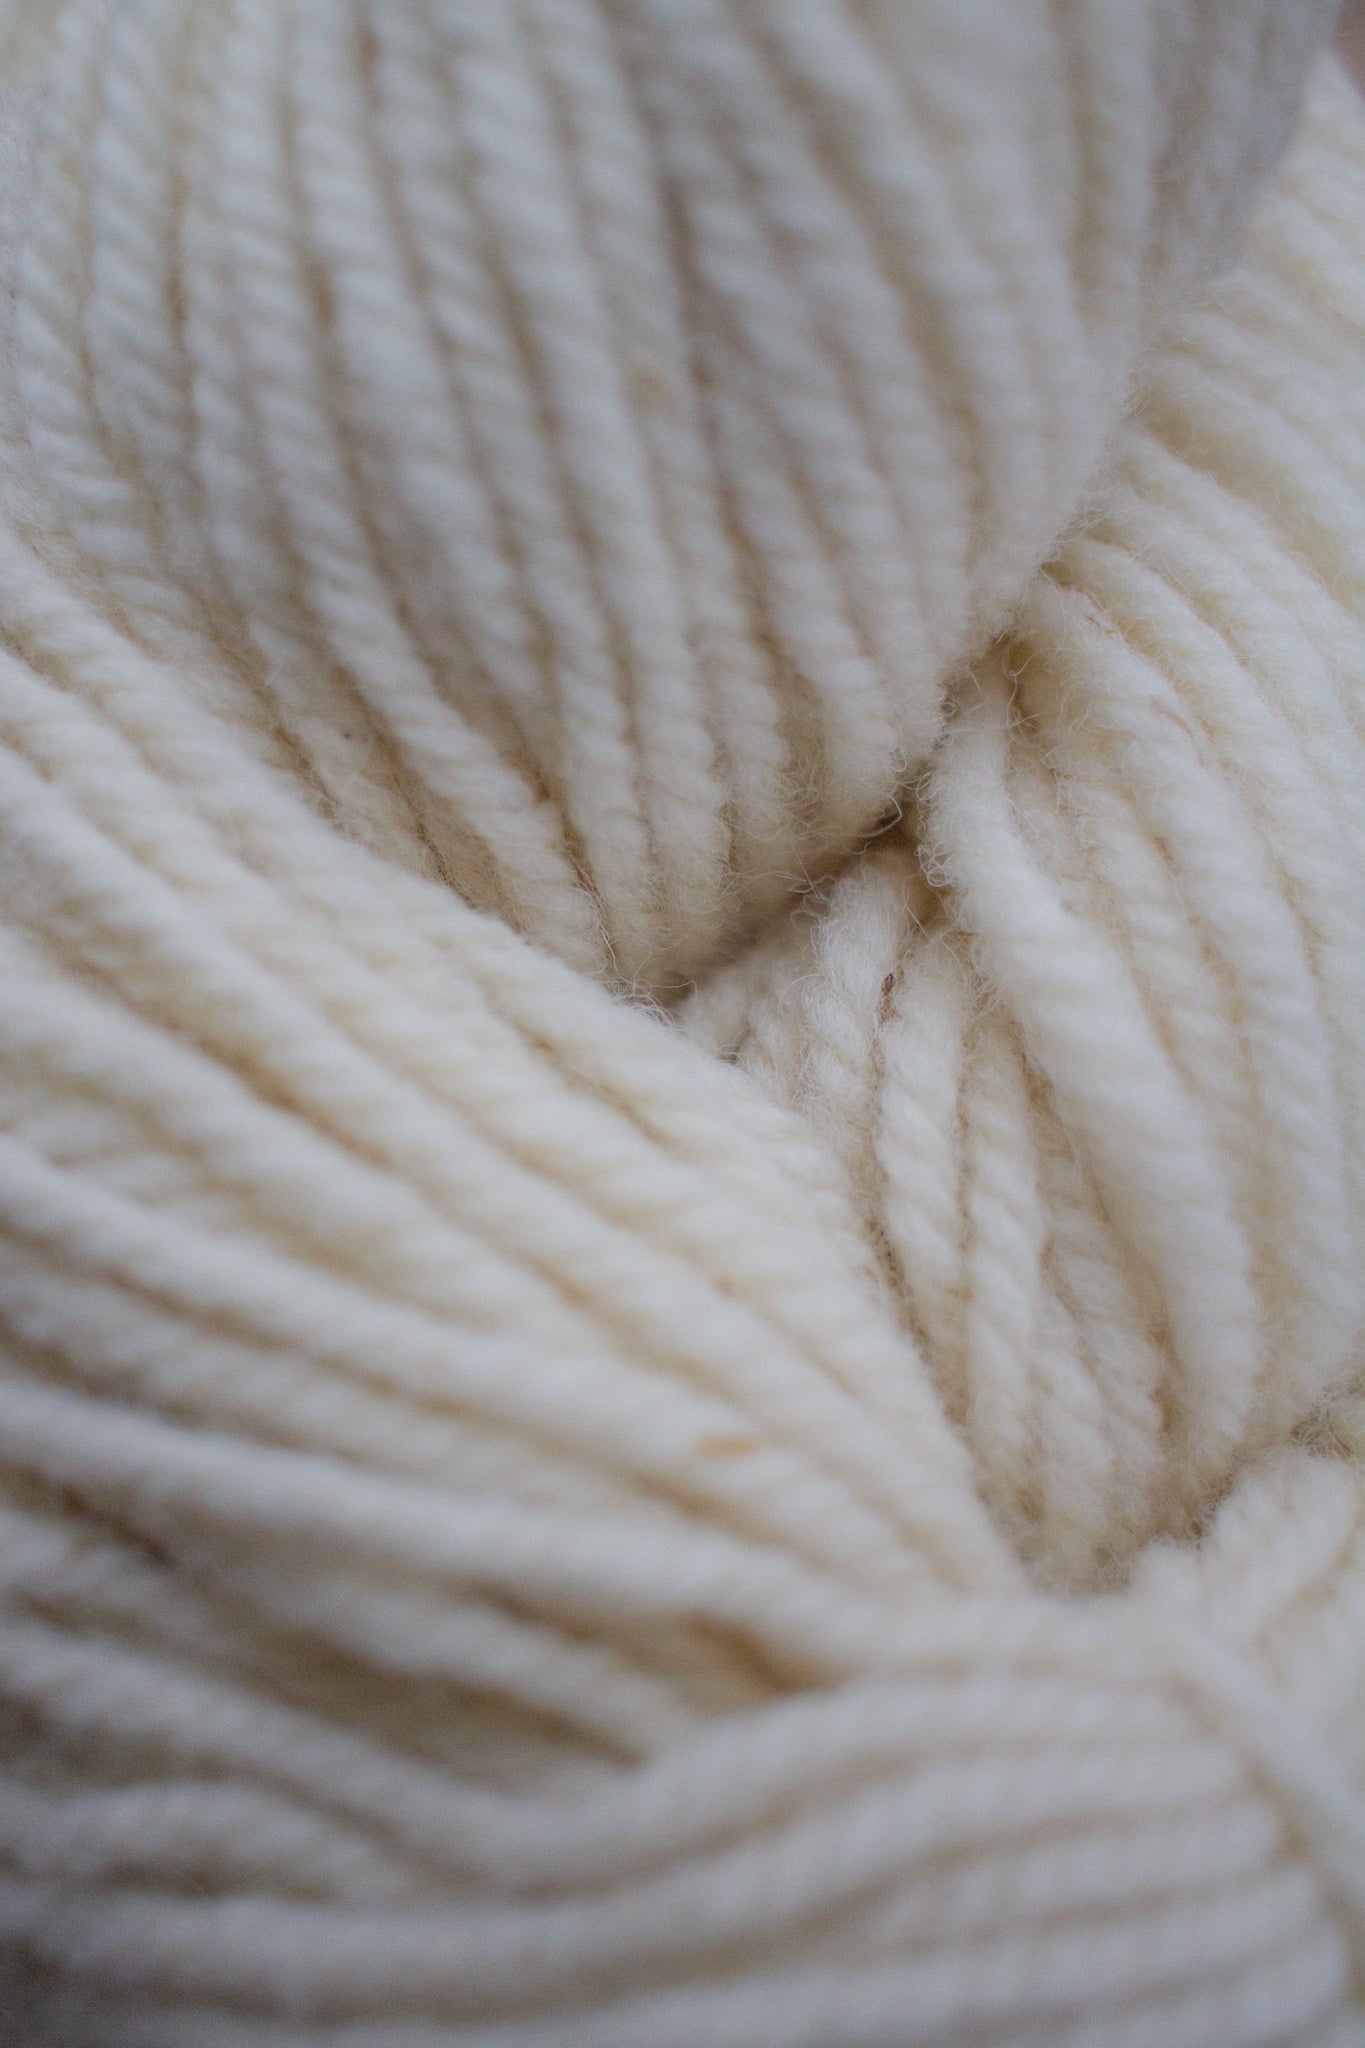 BULK Bare Yarn for Dyeing – Maritime Family Fiber